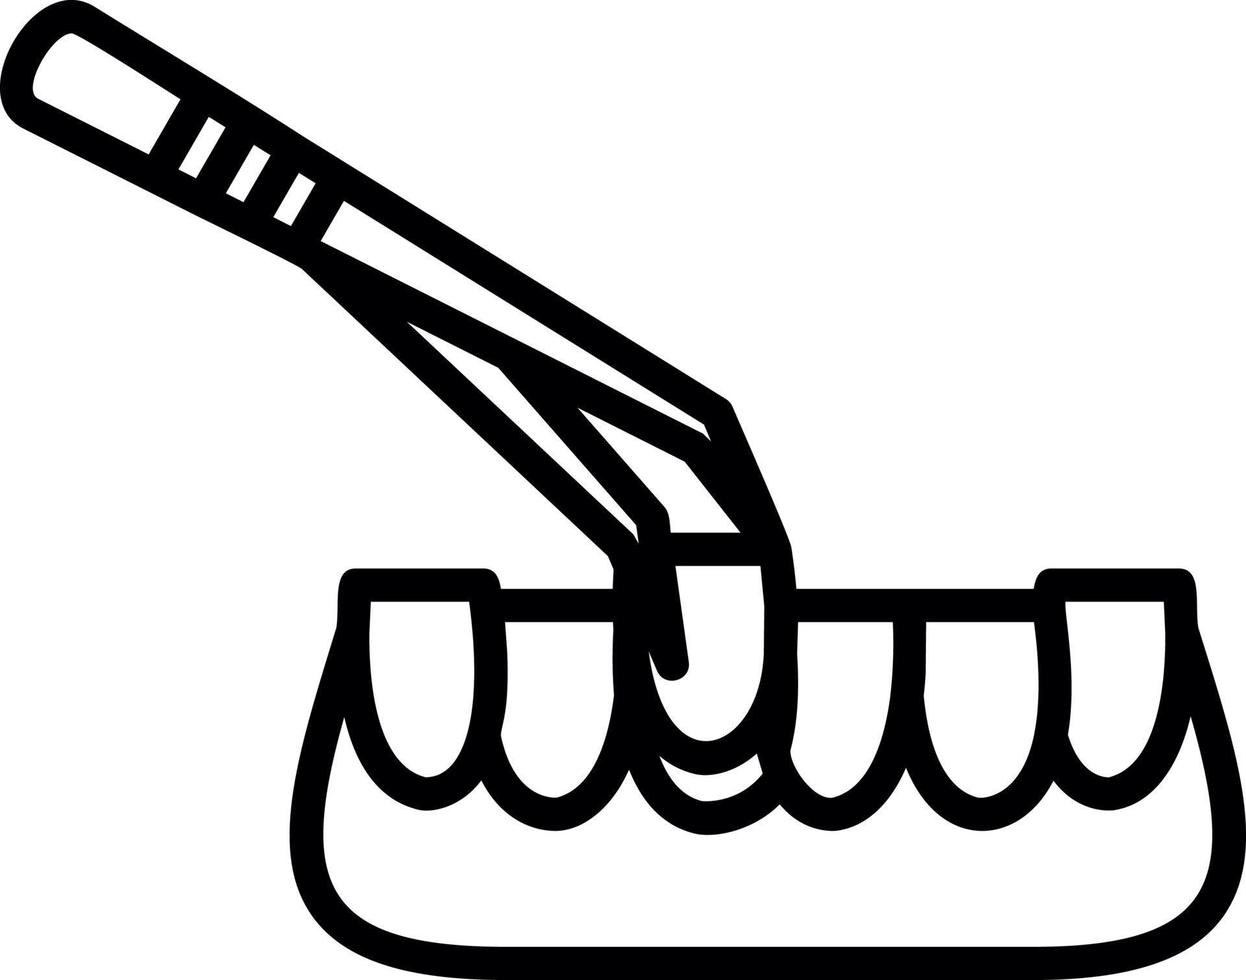 design de ícone de vetor de extração de dente